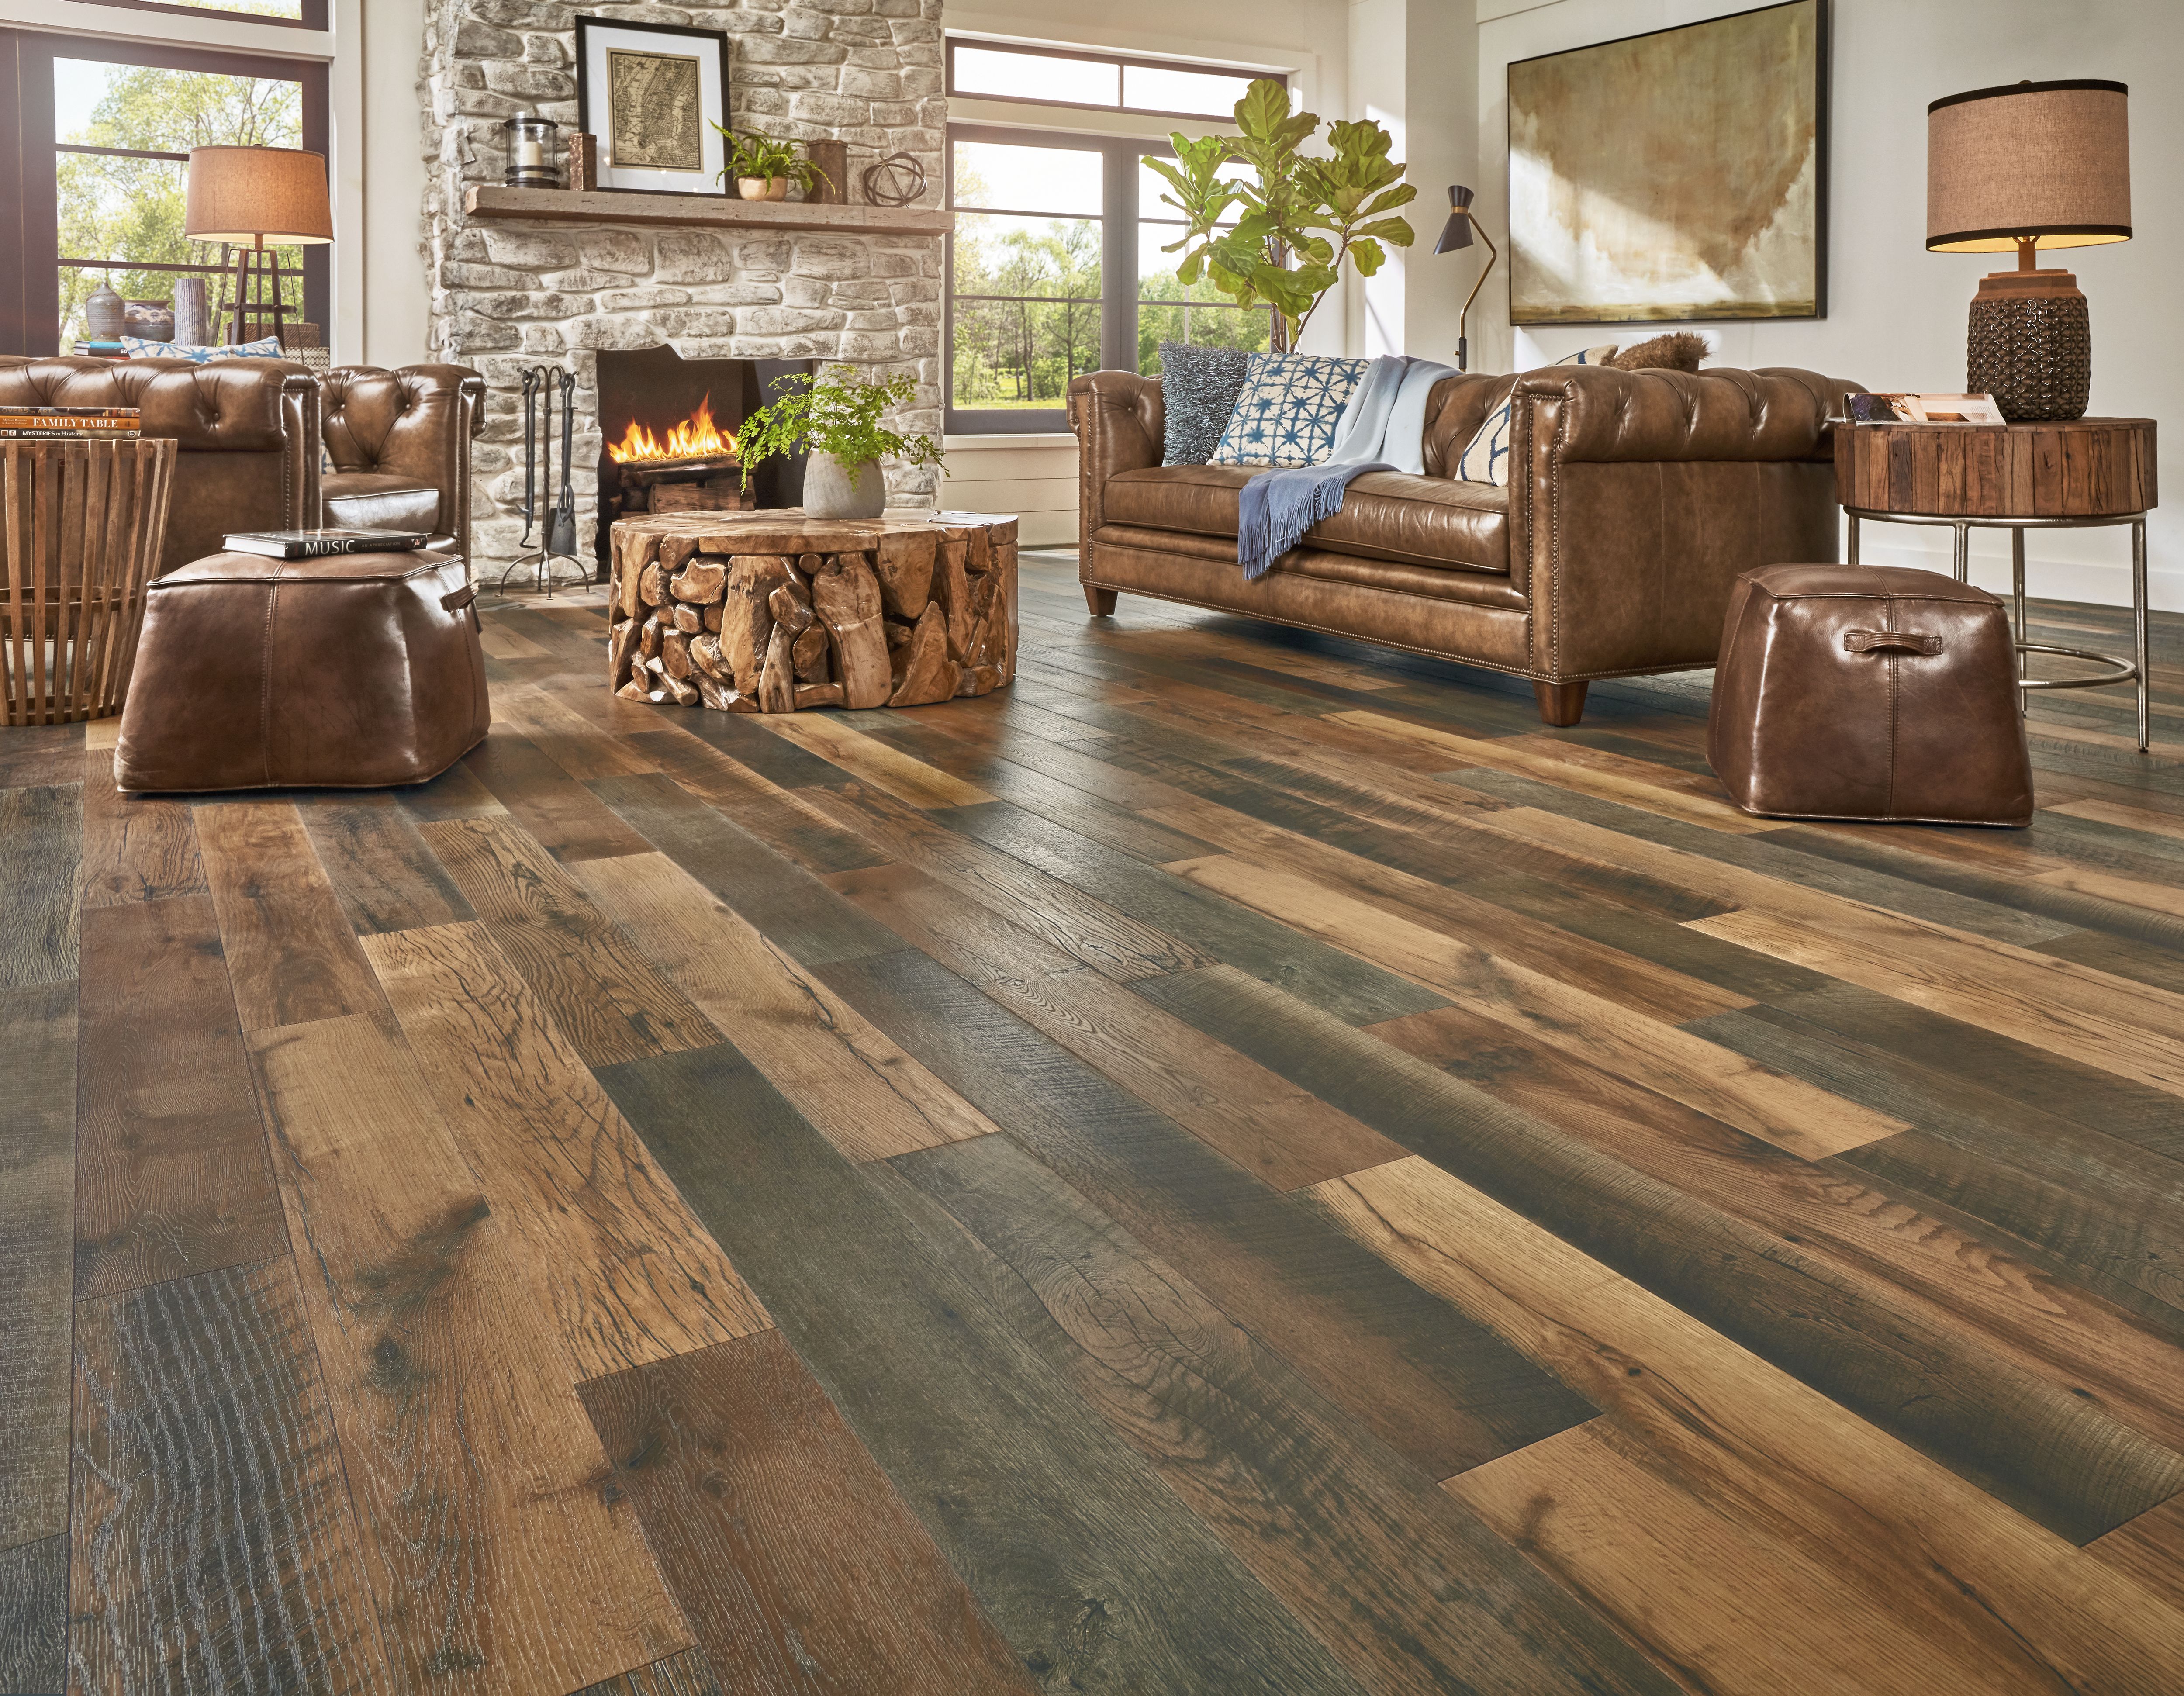 rich brown pergo wood floors in rustic living room